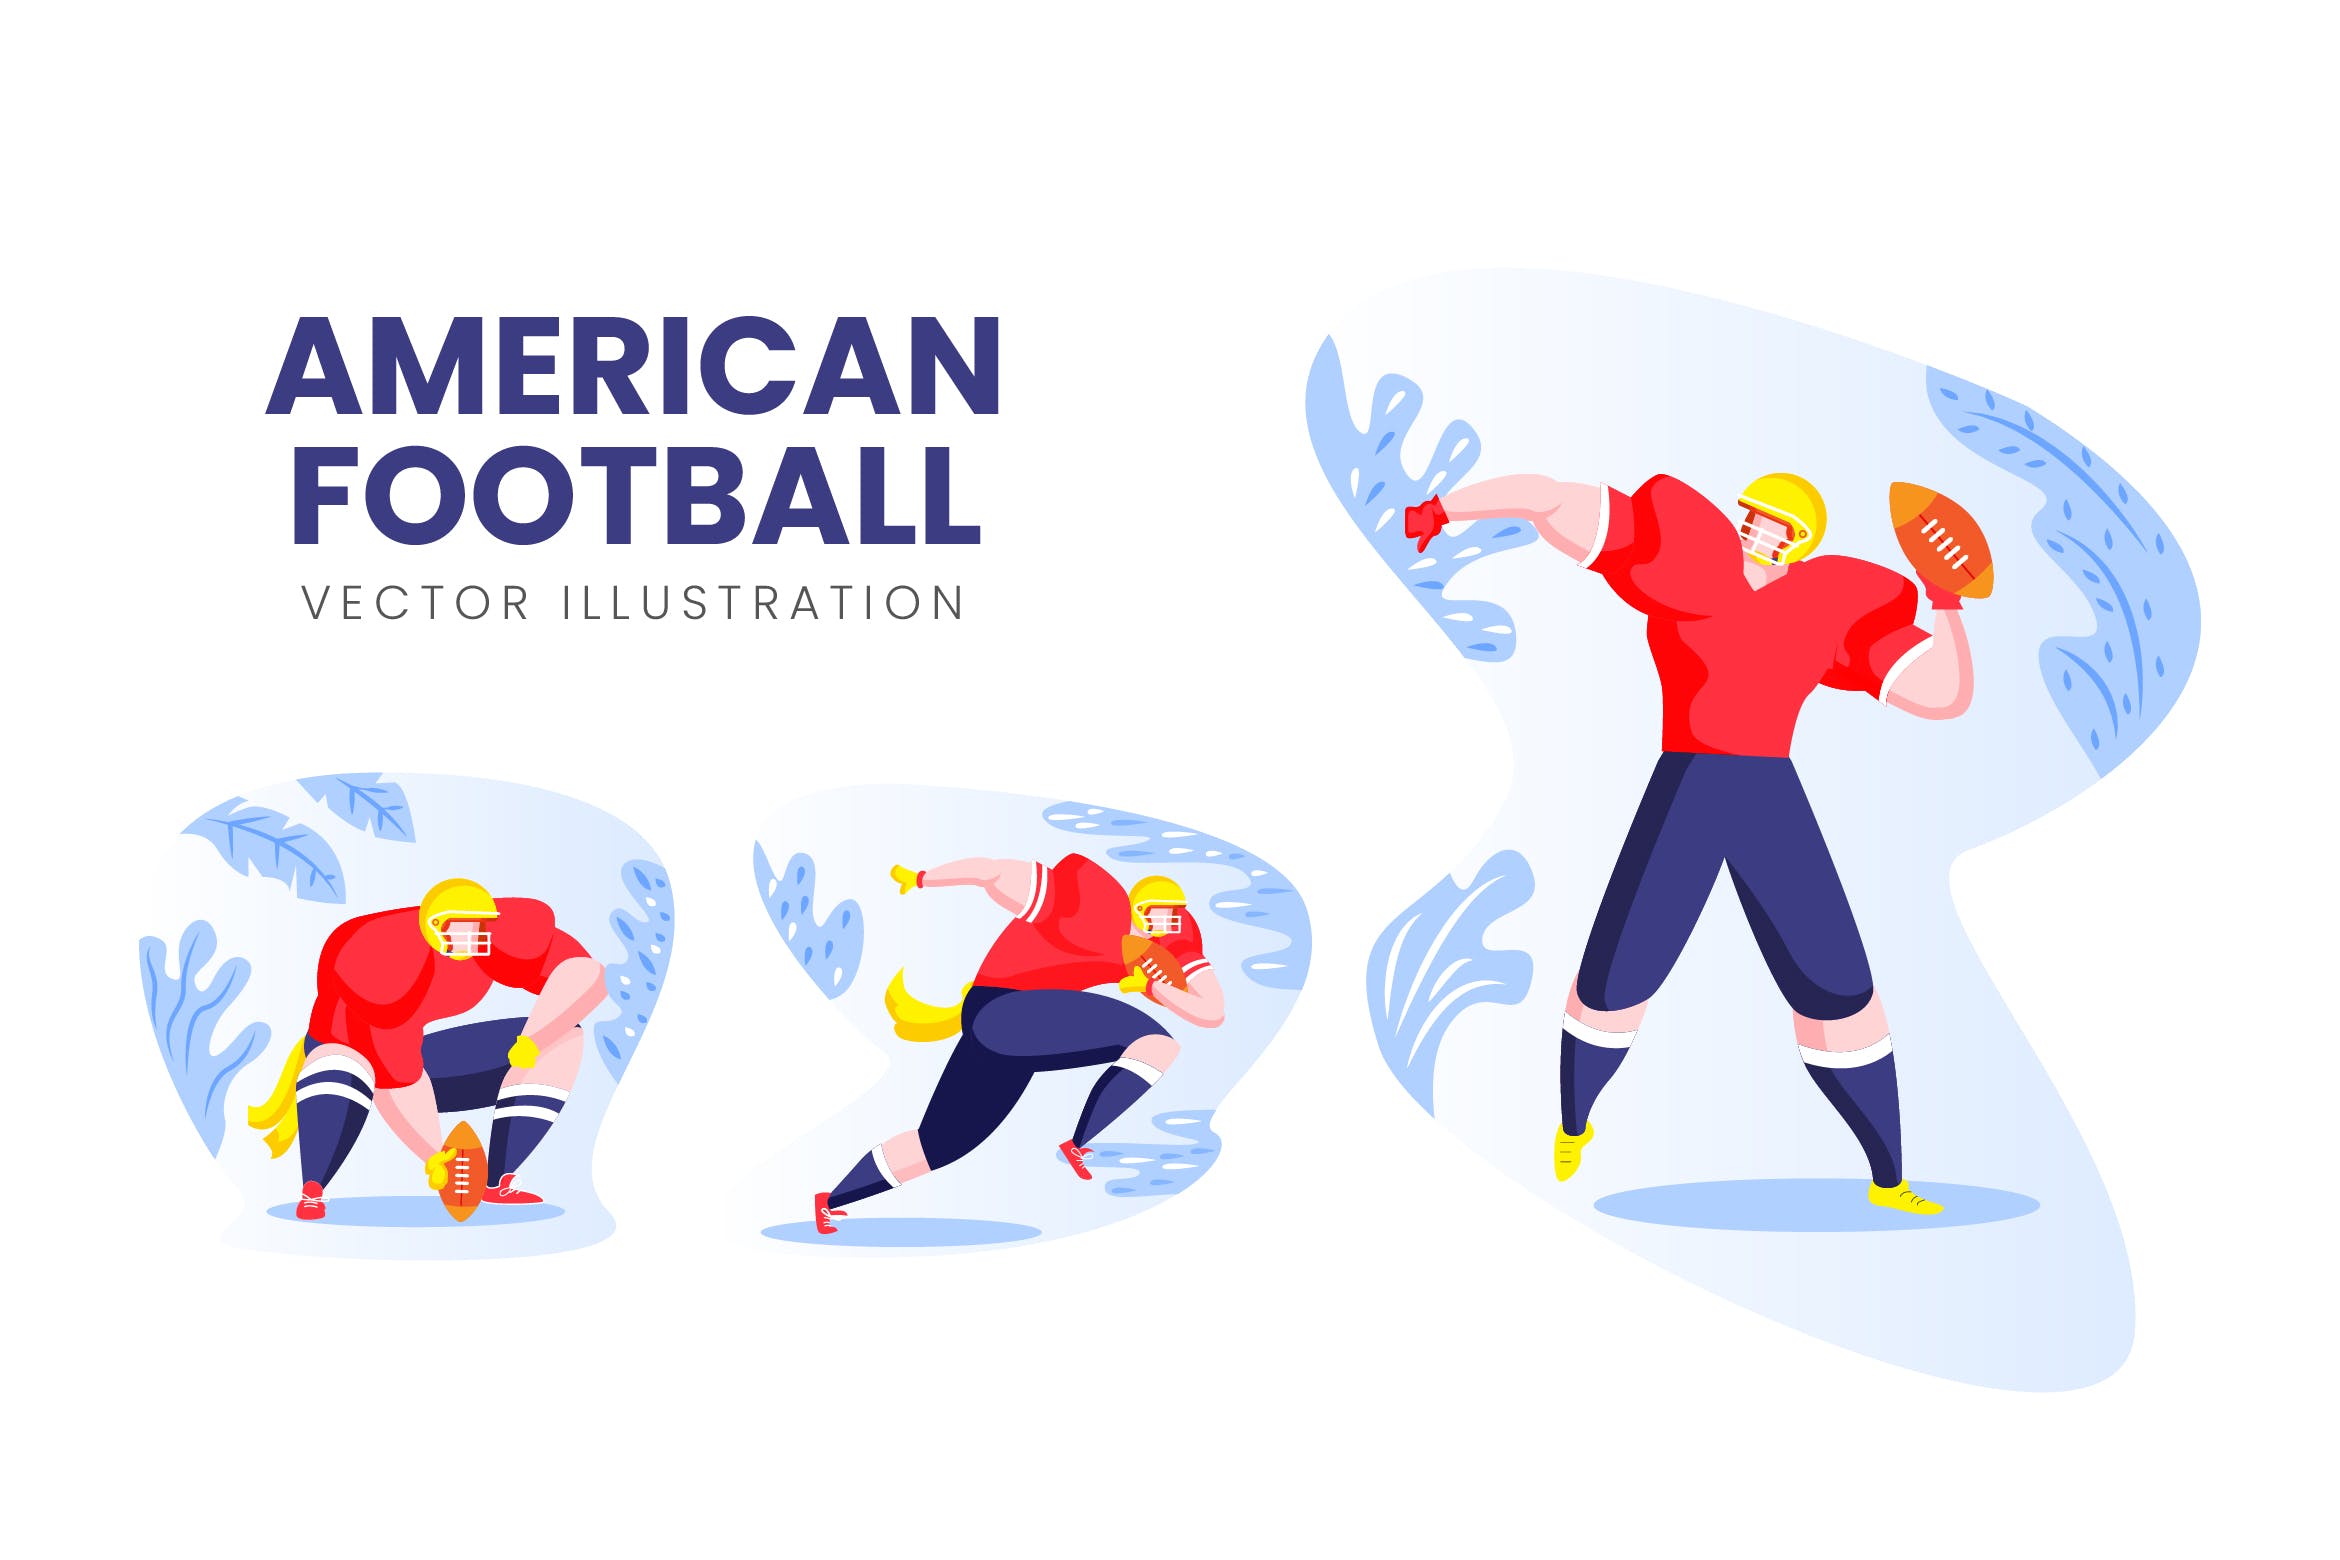 美式足球运动员人物形象16设计网精选手绘插画矢量素材 American Football Vector Character Set插图